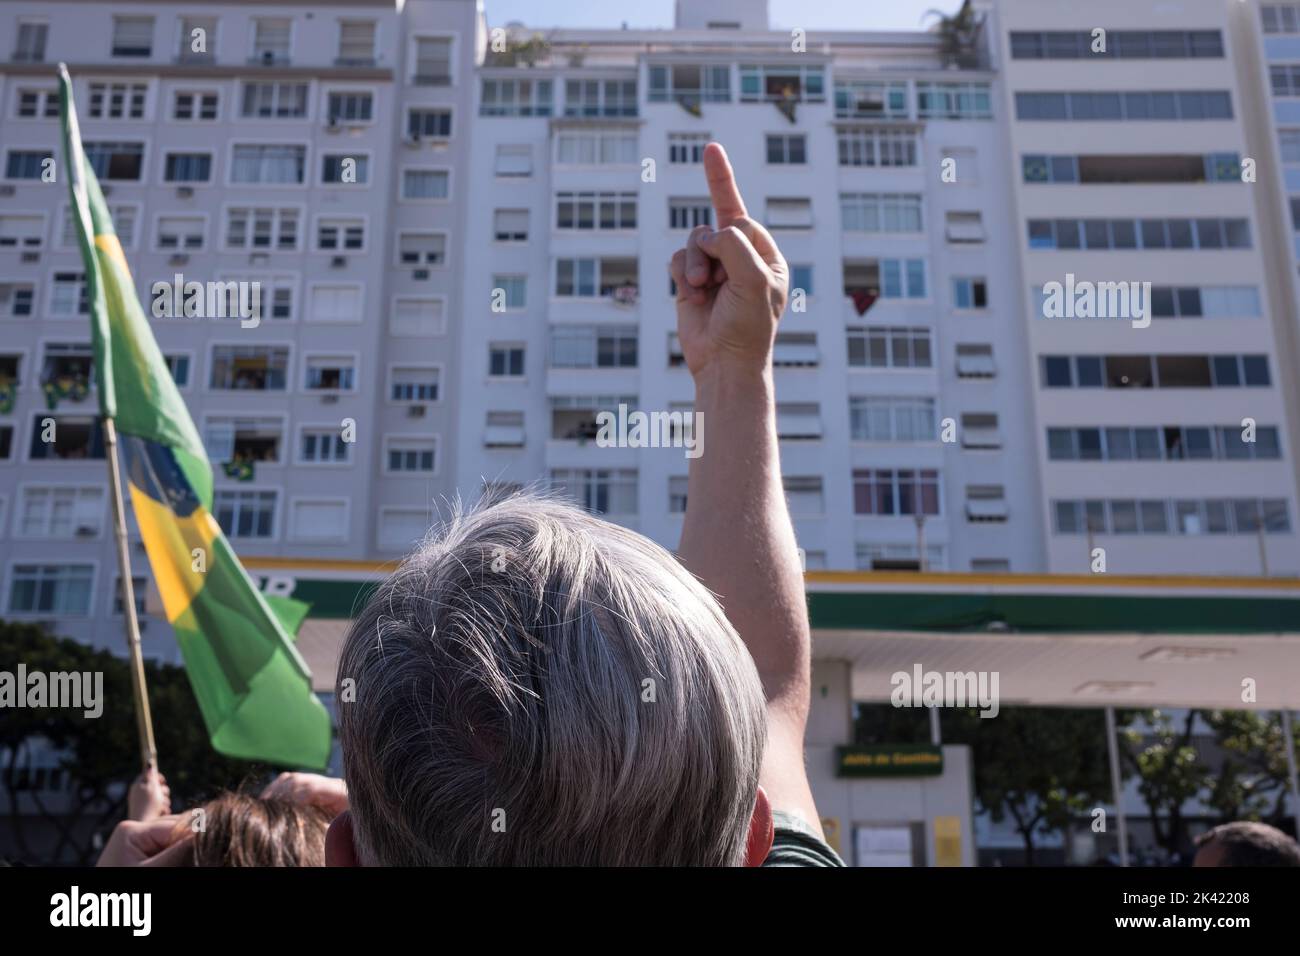 Les partisans de Bolsonaro tiennent une manifestation politique sur la plage de Copacabana à la date de la célébration des 200 ans d'indépendance du Brésil. Le démonstrateur offense et maudit un résident qui a exprimé sa sympathie pour le candidat à la présidence Luis Inácio Lula da Silva Banque D'Images